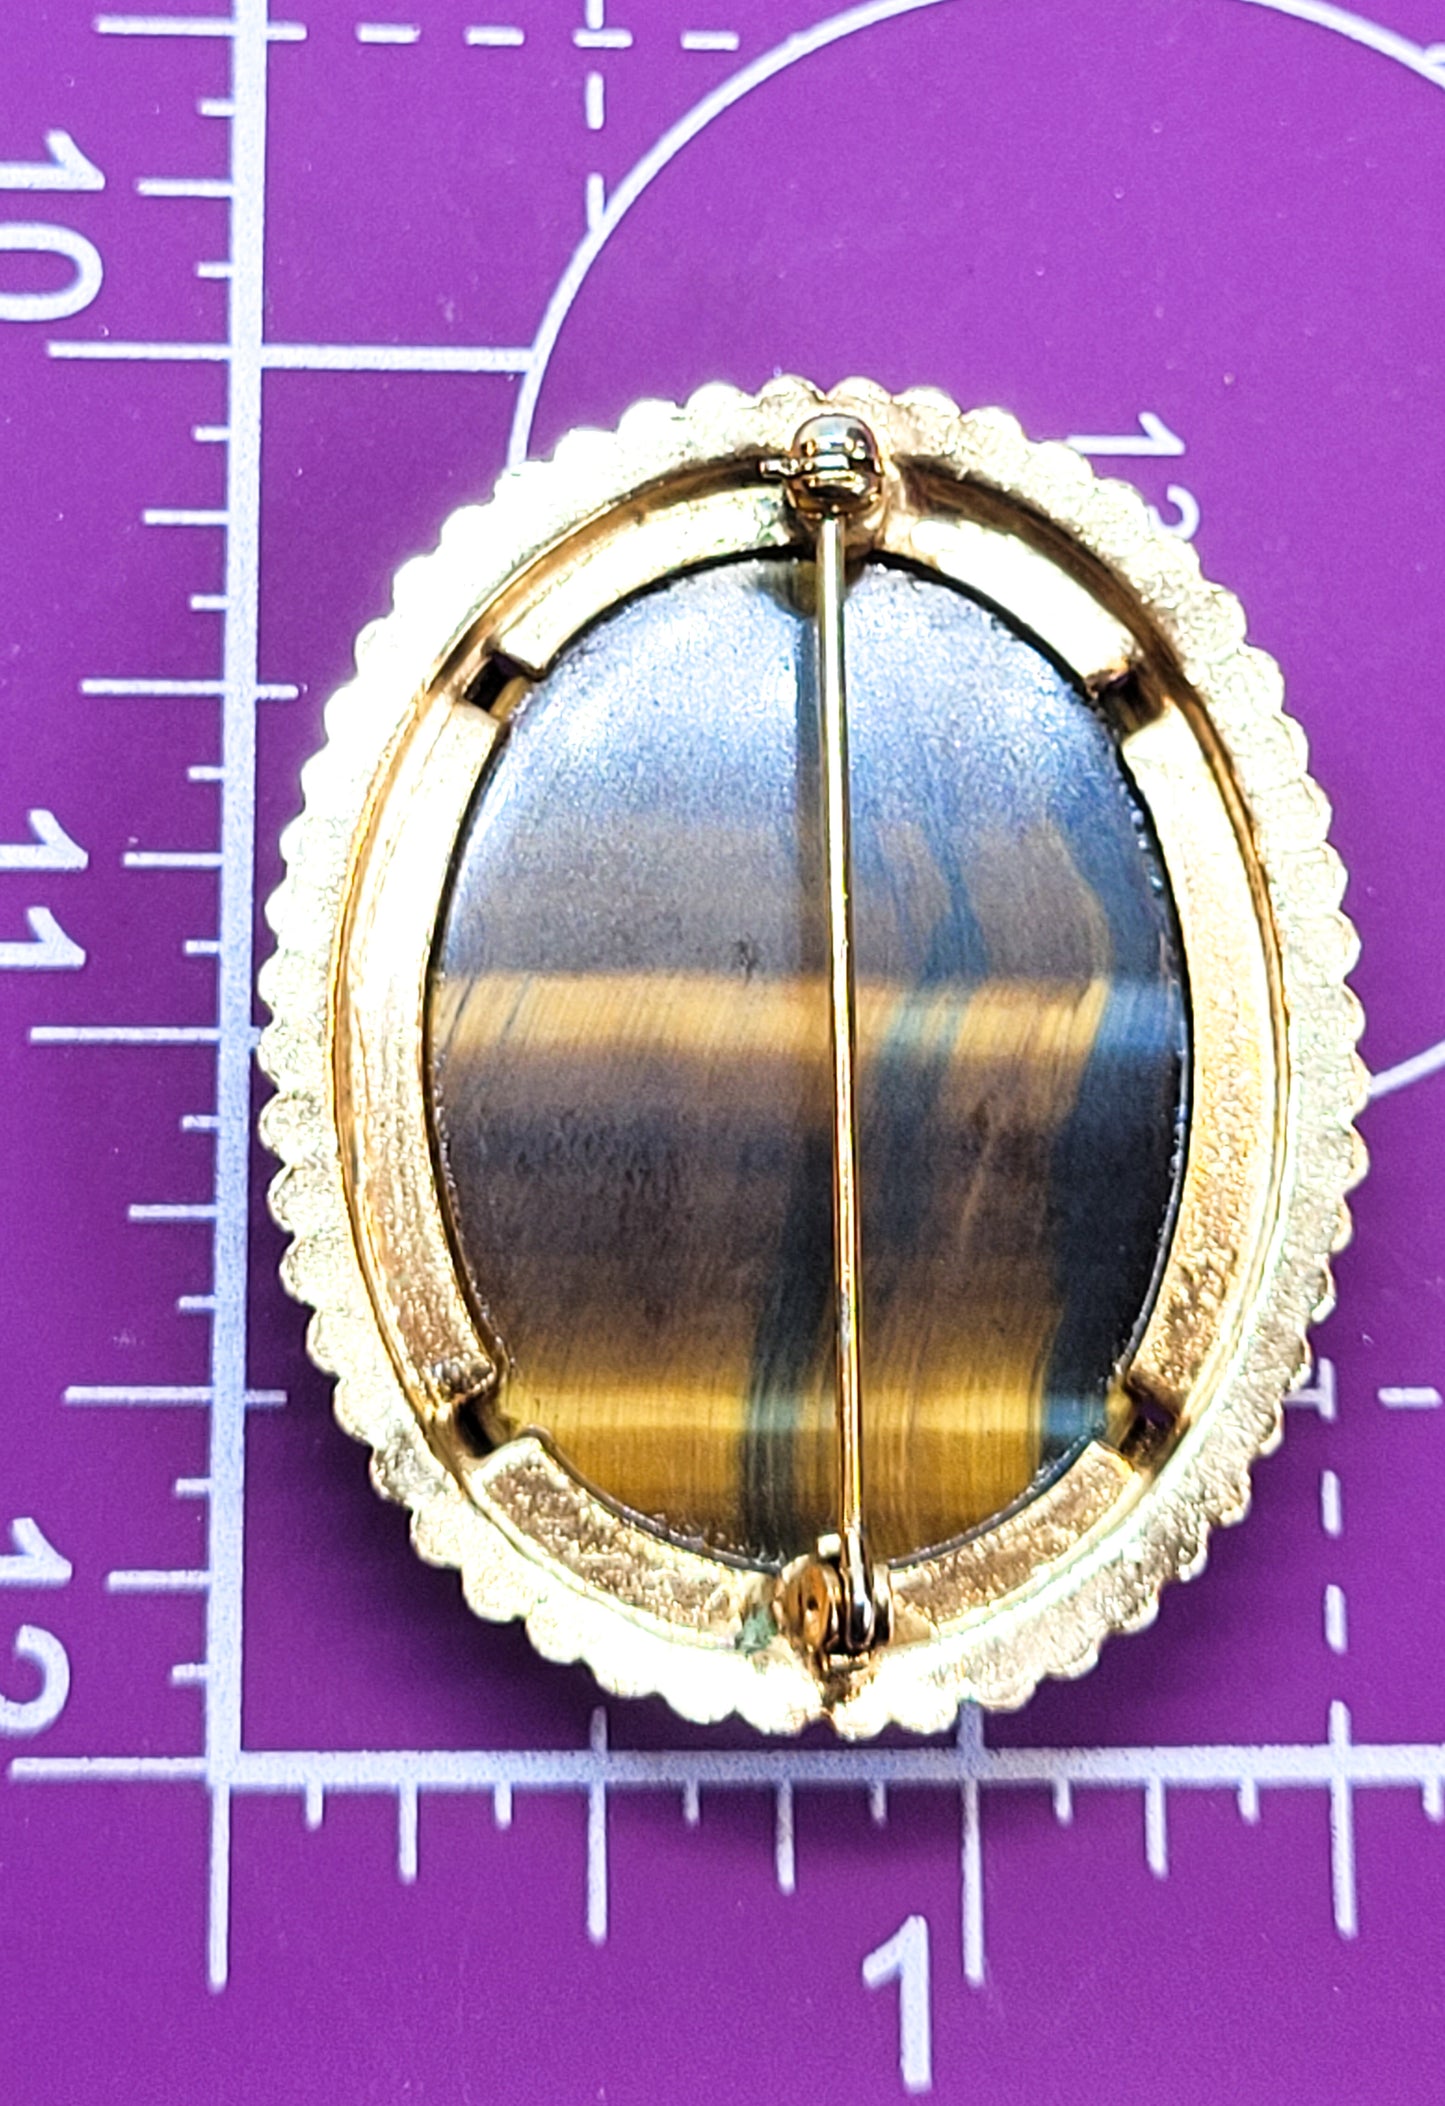 Large banded tiger's eye vintage gold toned gemstone brooch pin